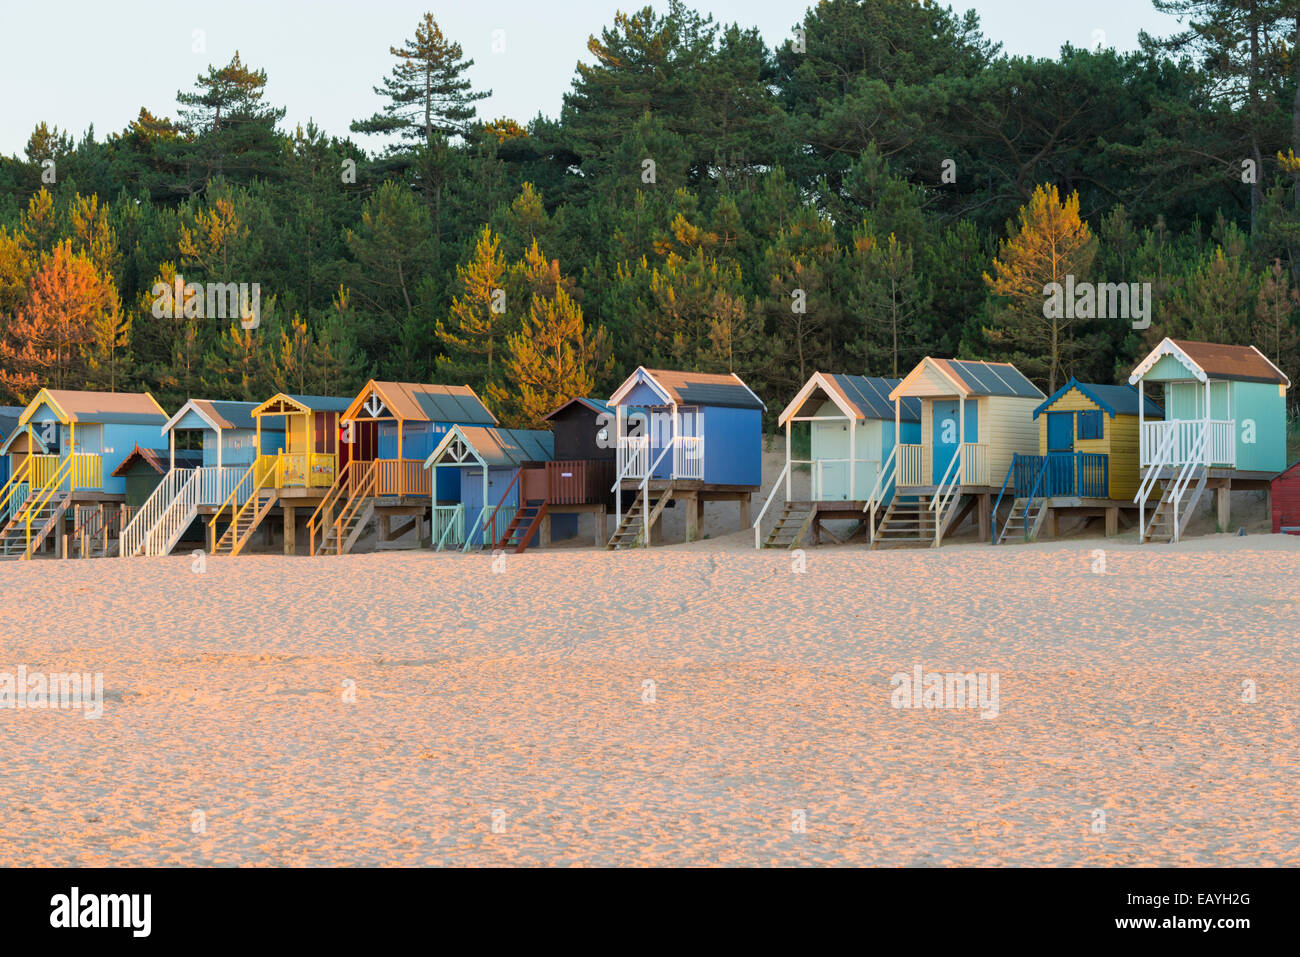 Une vue de la plage et des cabines de plage de Wells next the Sea, Norfolk, Angleterre Banque D'Images